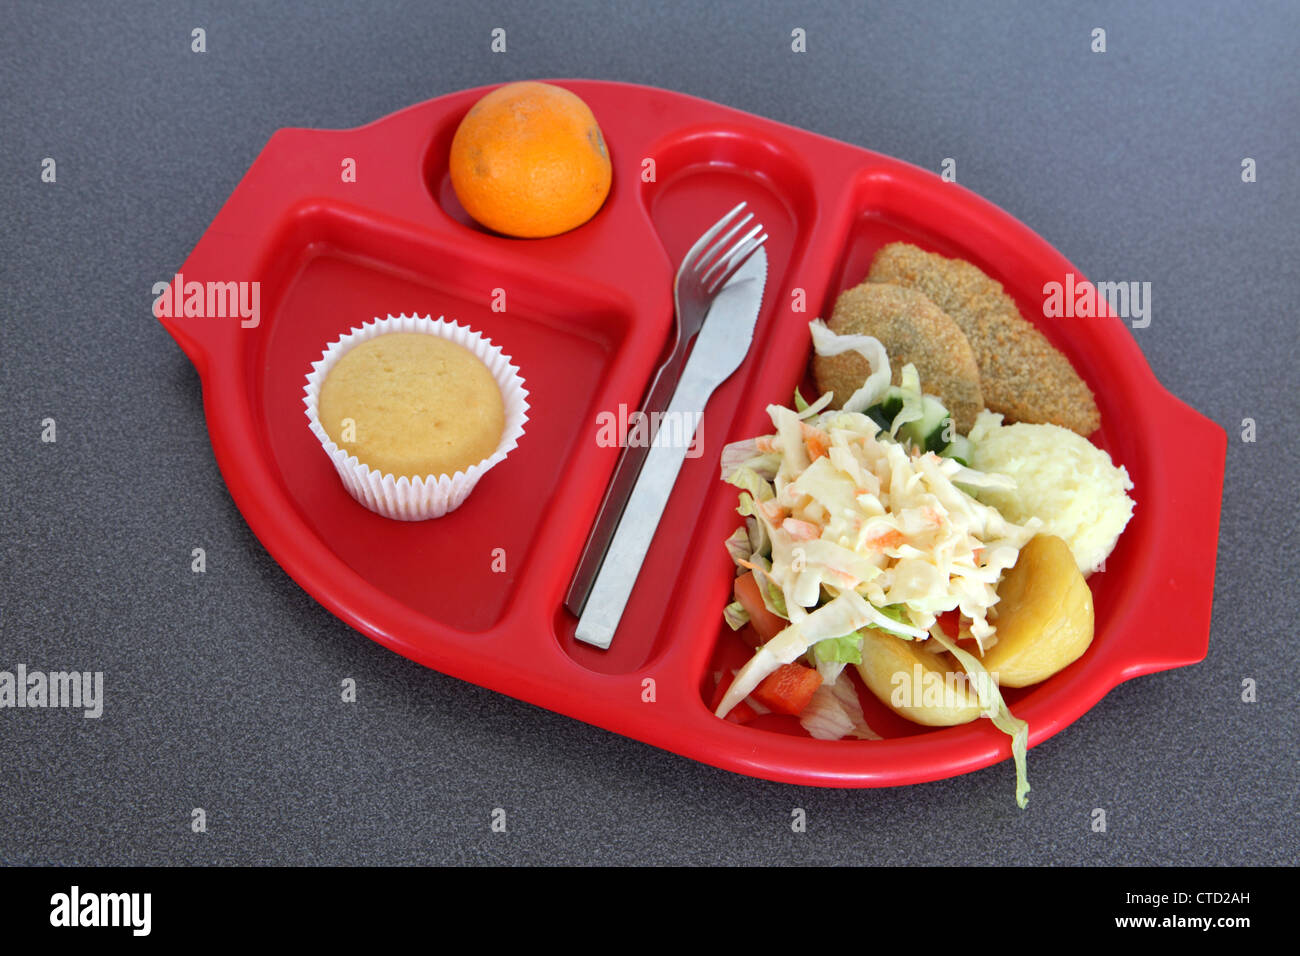 École saine déjeuner dîner servi sur le plateau en plastique rouge préformé, burger de haricots salade, muffin, orange Banque D'Images